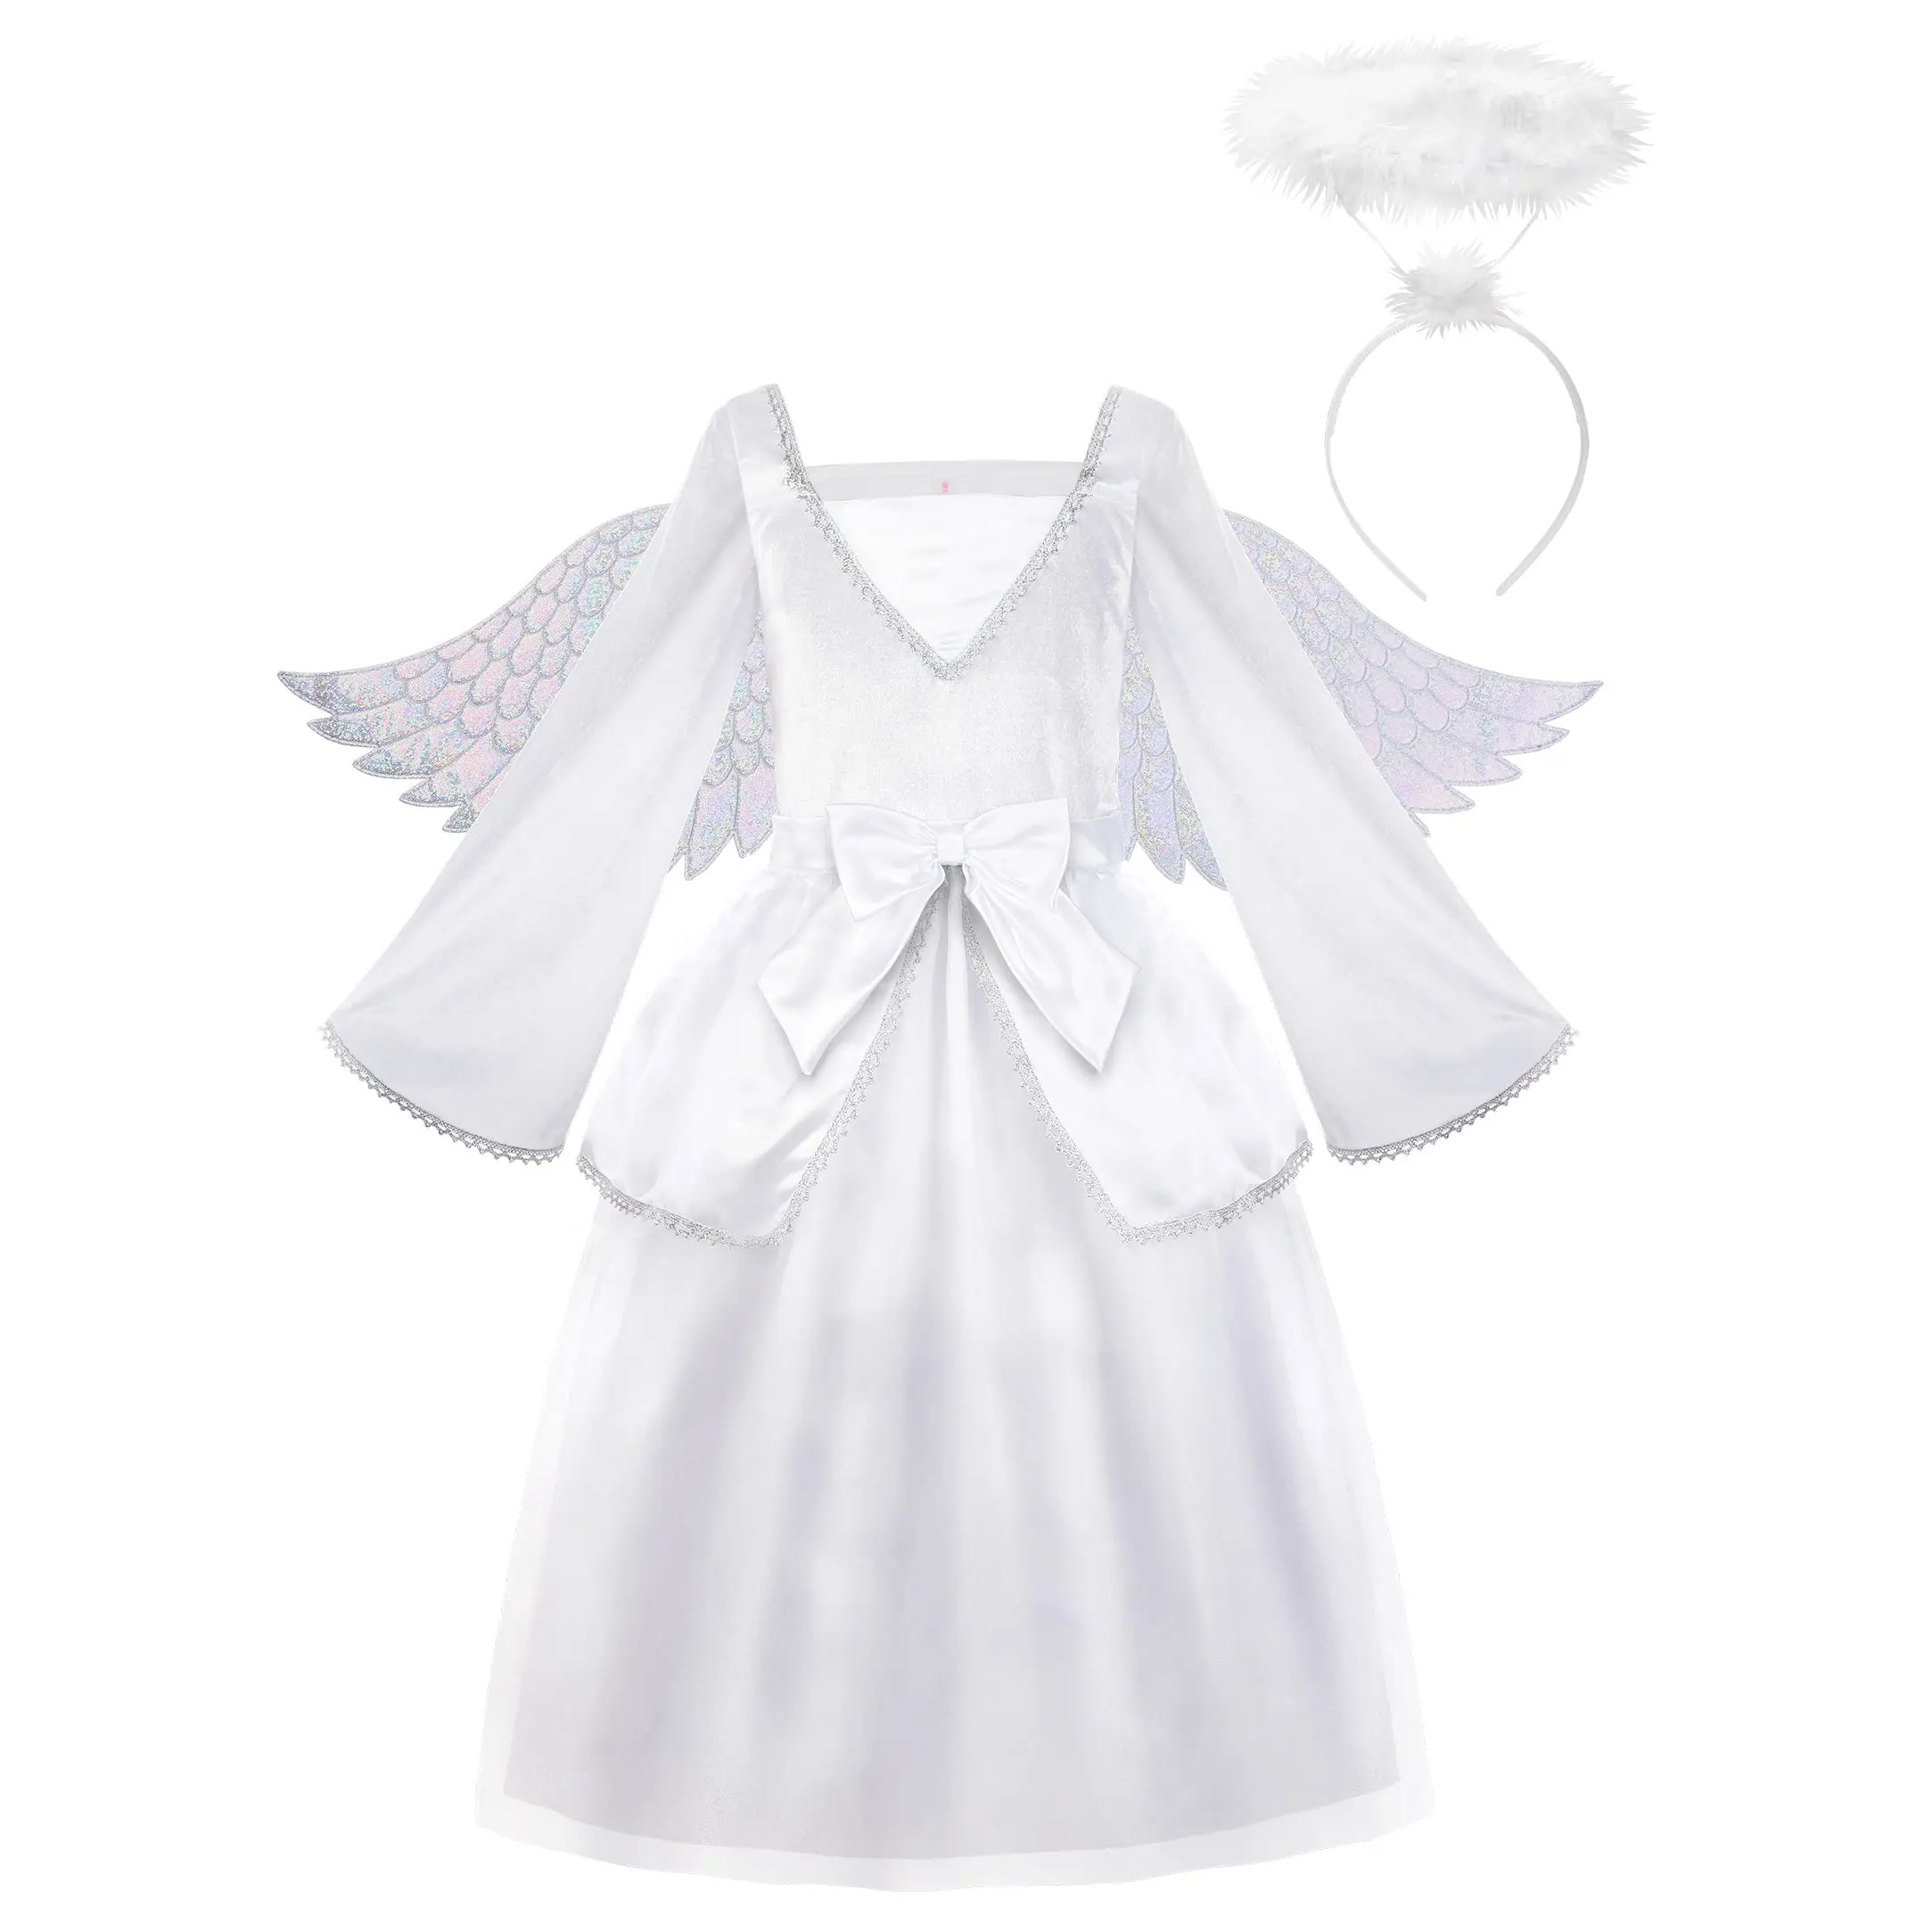 아이들을위한 할로윈 소녀 천사 의상 화이트 멋진 공주 얇은 명주 그물 원피스 할로윈 파티 천사 원피스 날개와 헤일로